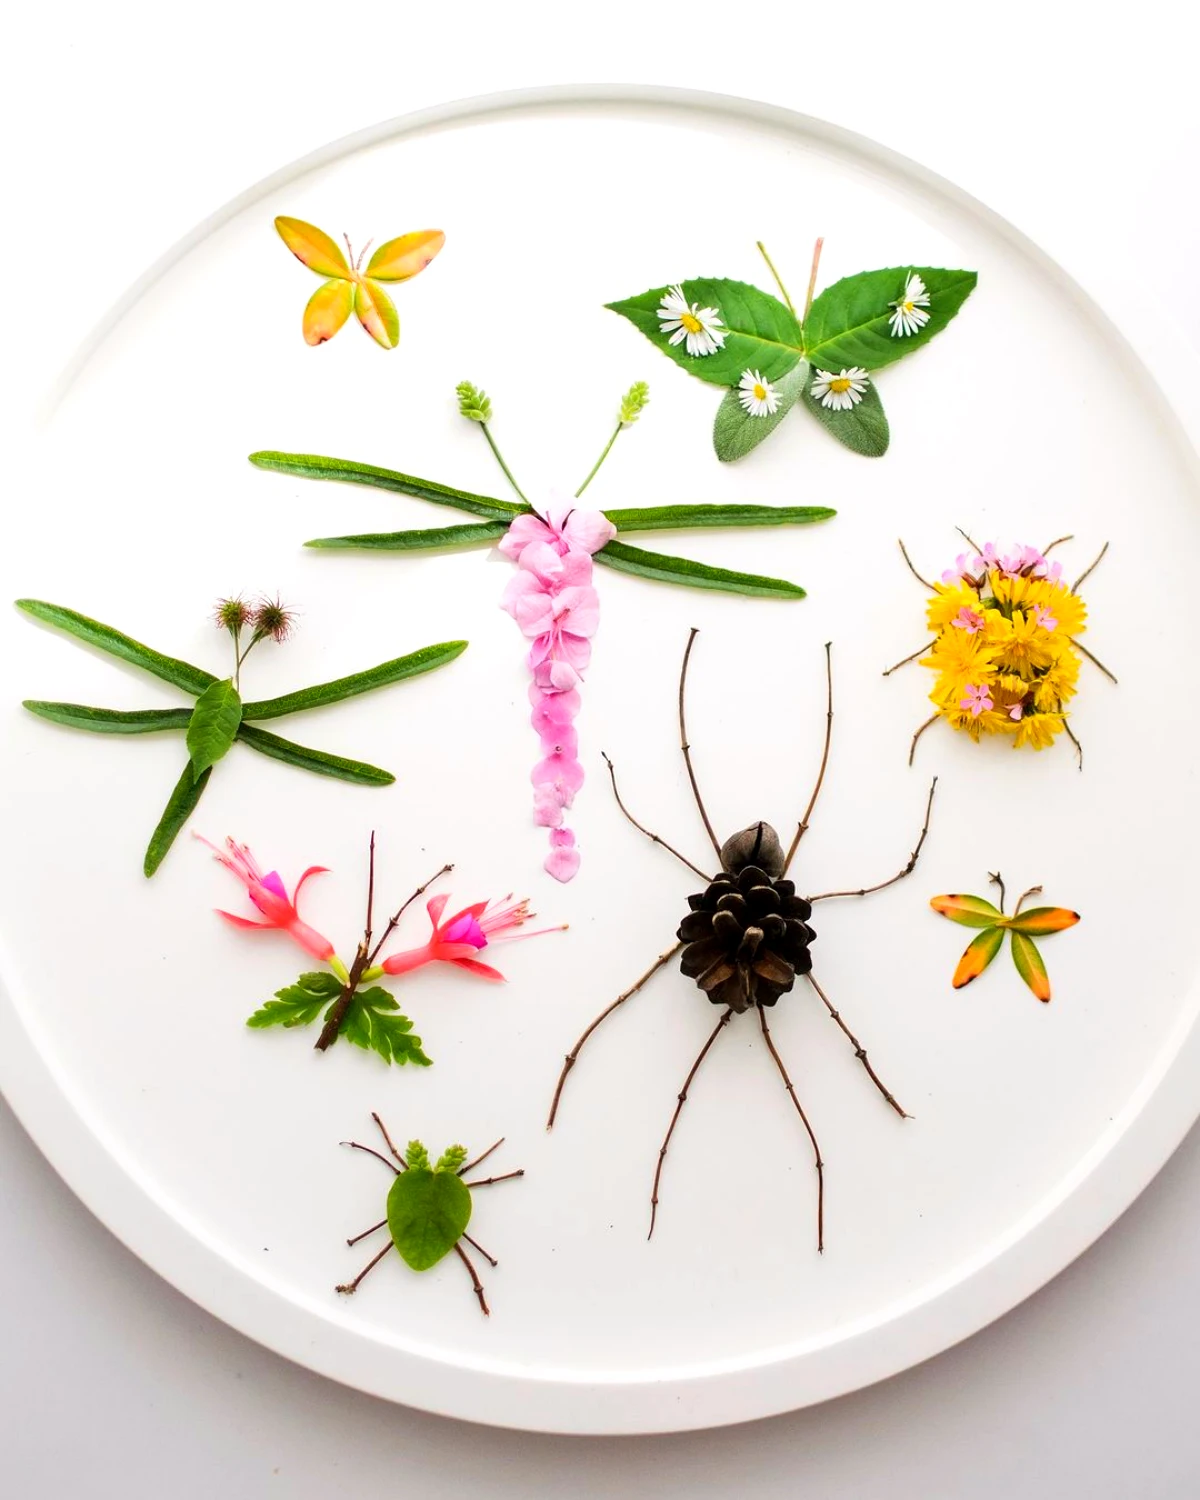 occupation enfant creation avec des fleurs et des plantes dans une assiette